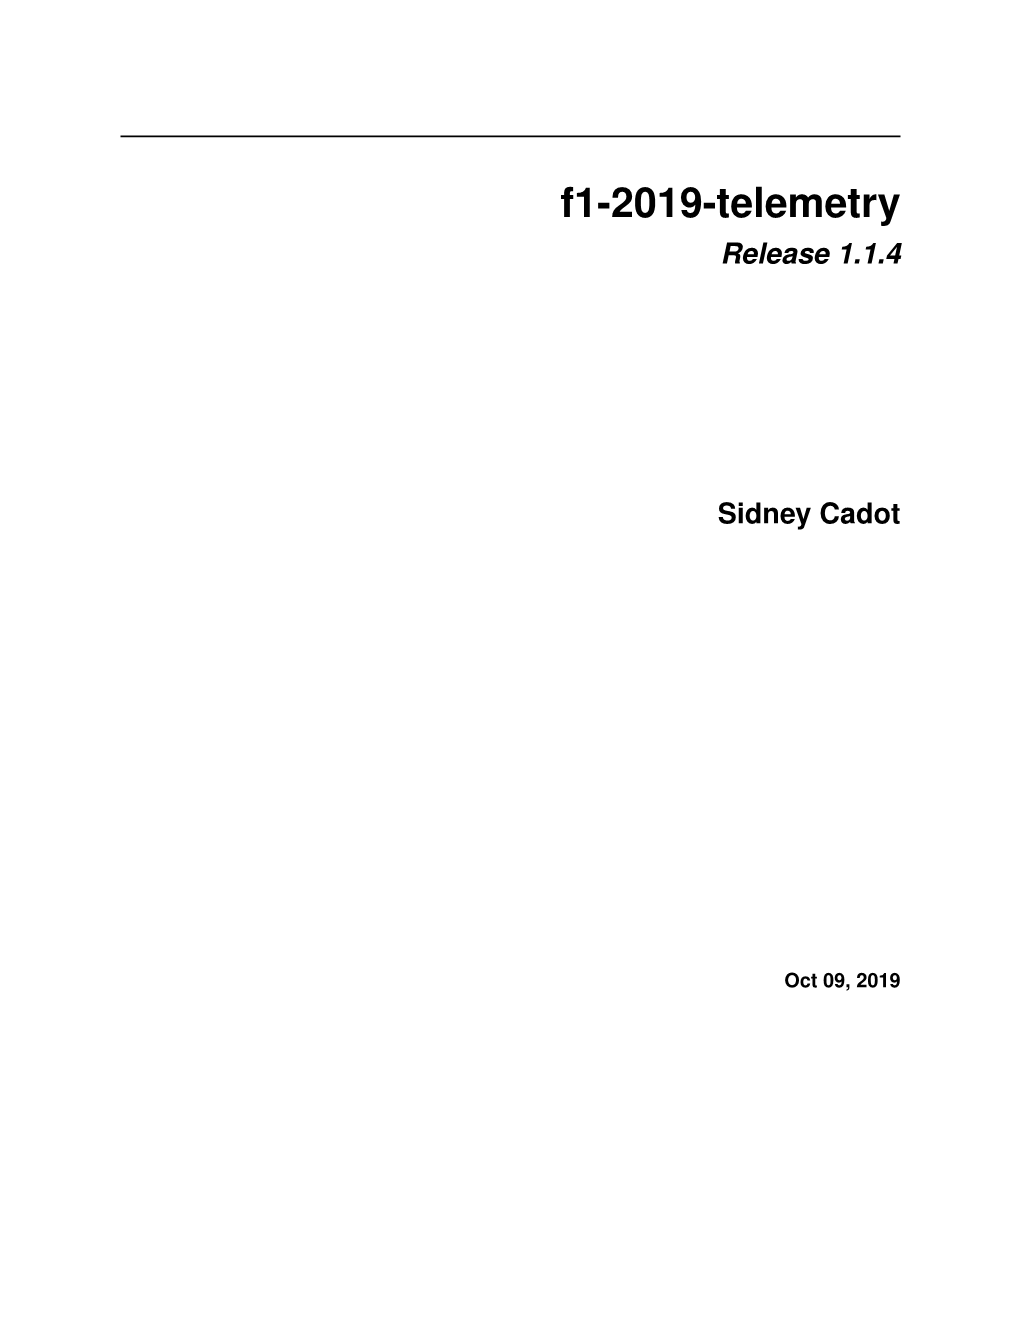 F1-2019-Telemetry Release 1.1.4